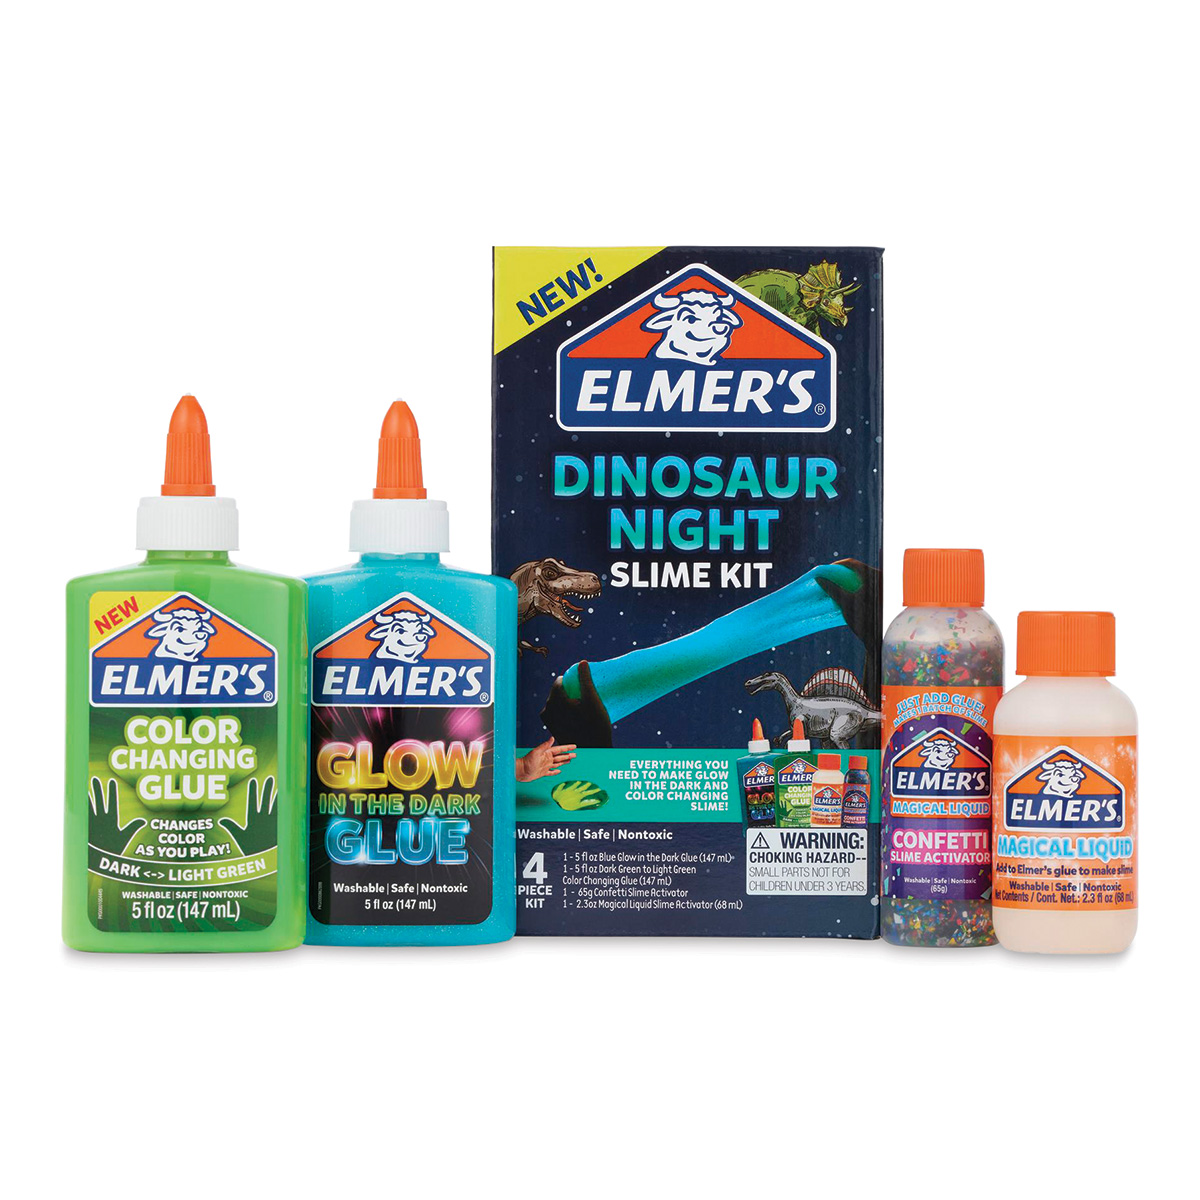 Elmer's Glow in the Dark Glue, Natural - 5 fl oz bottle